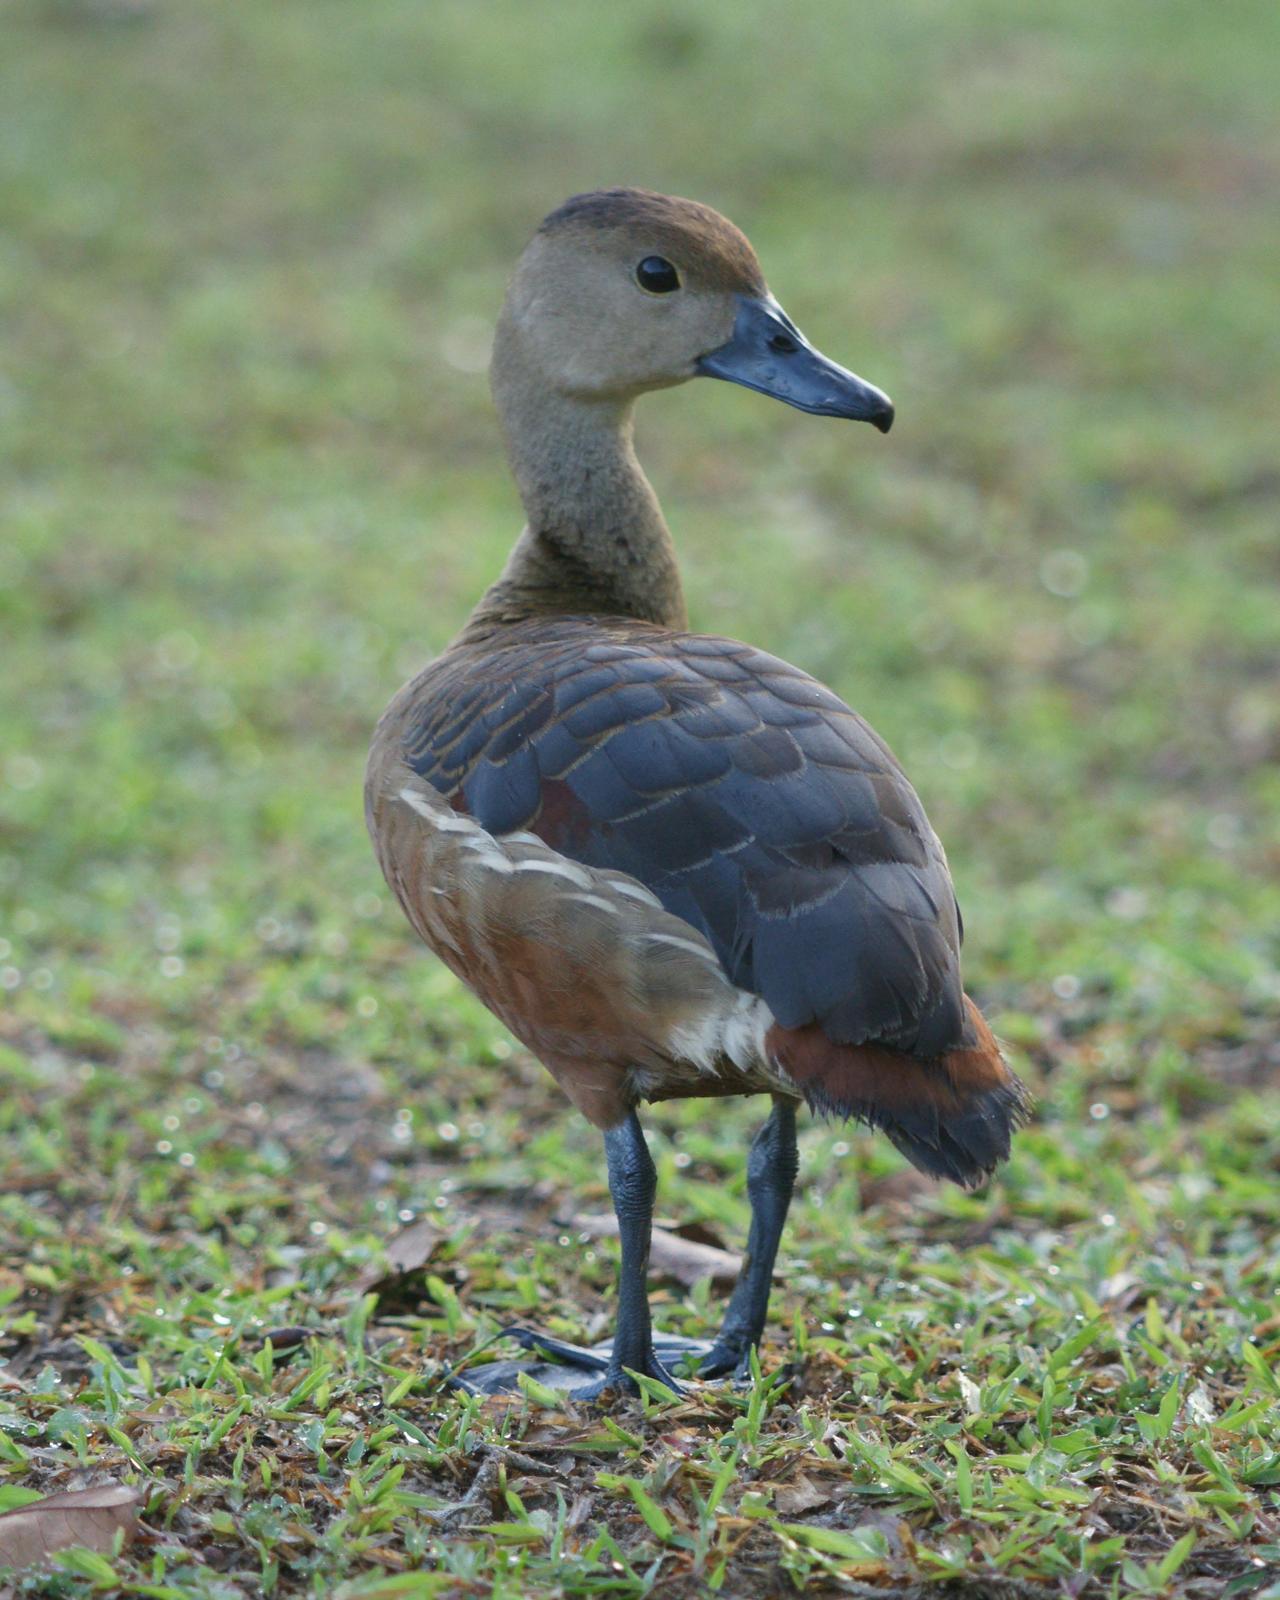 Lesser Whistling-Duck Photo by Steve Percival